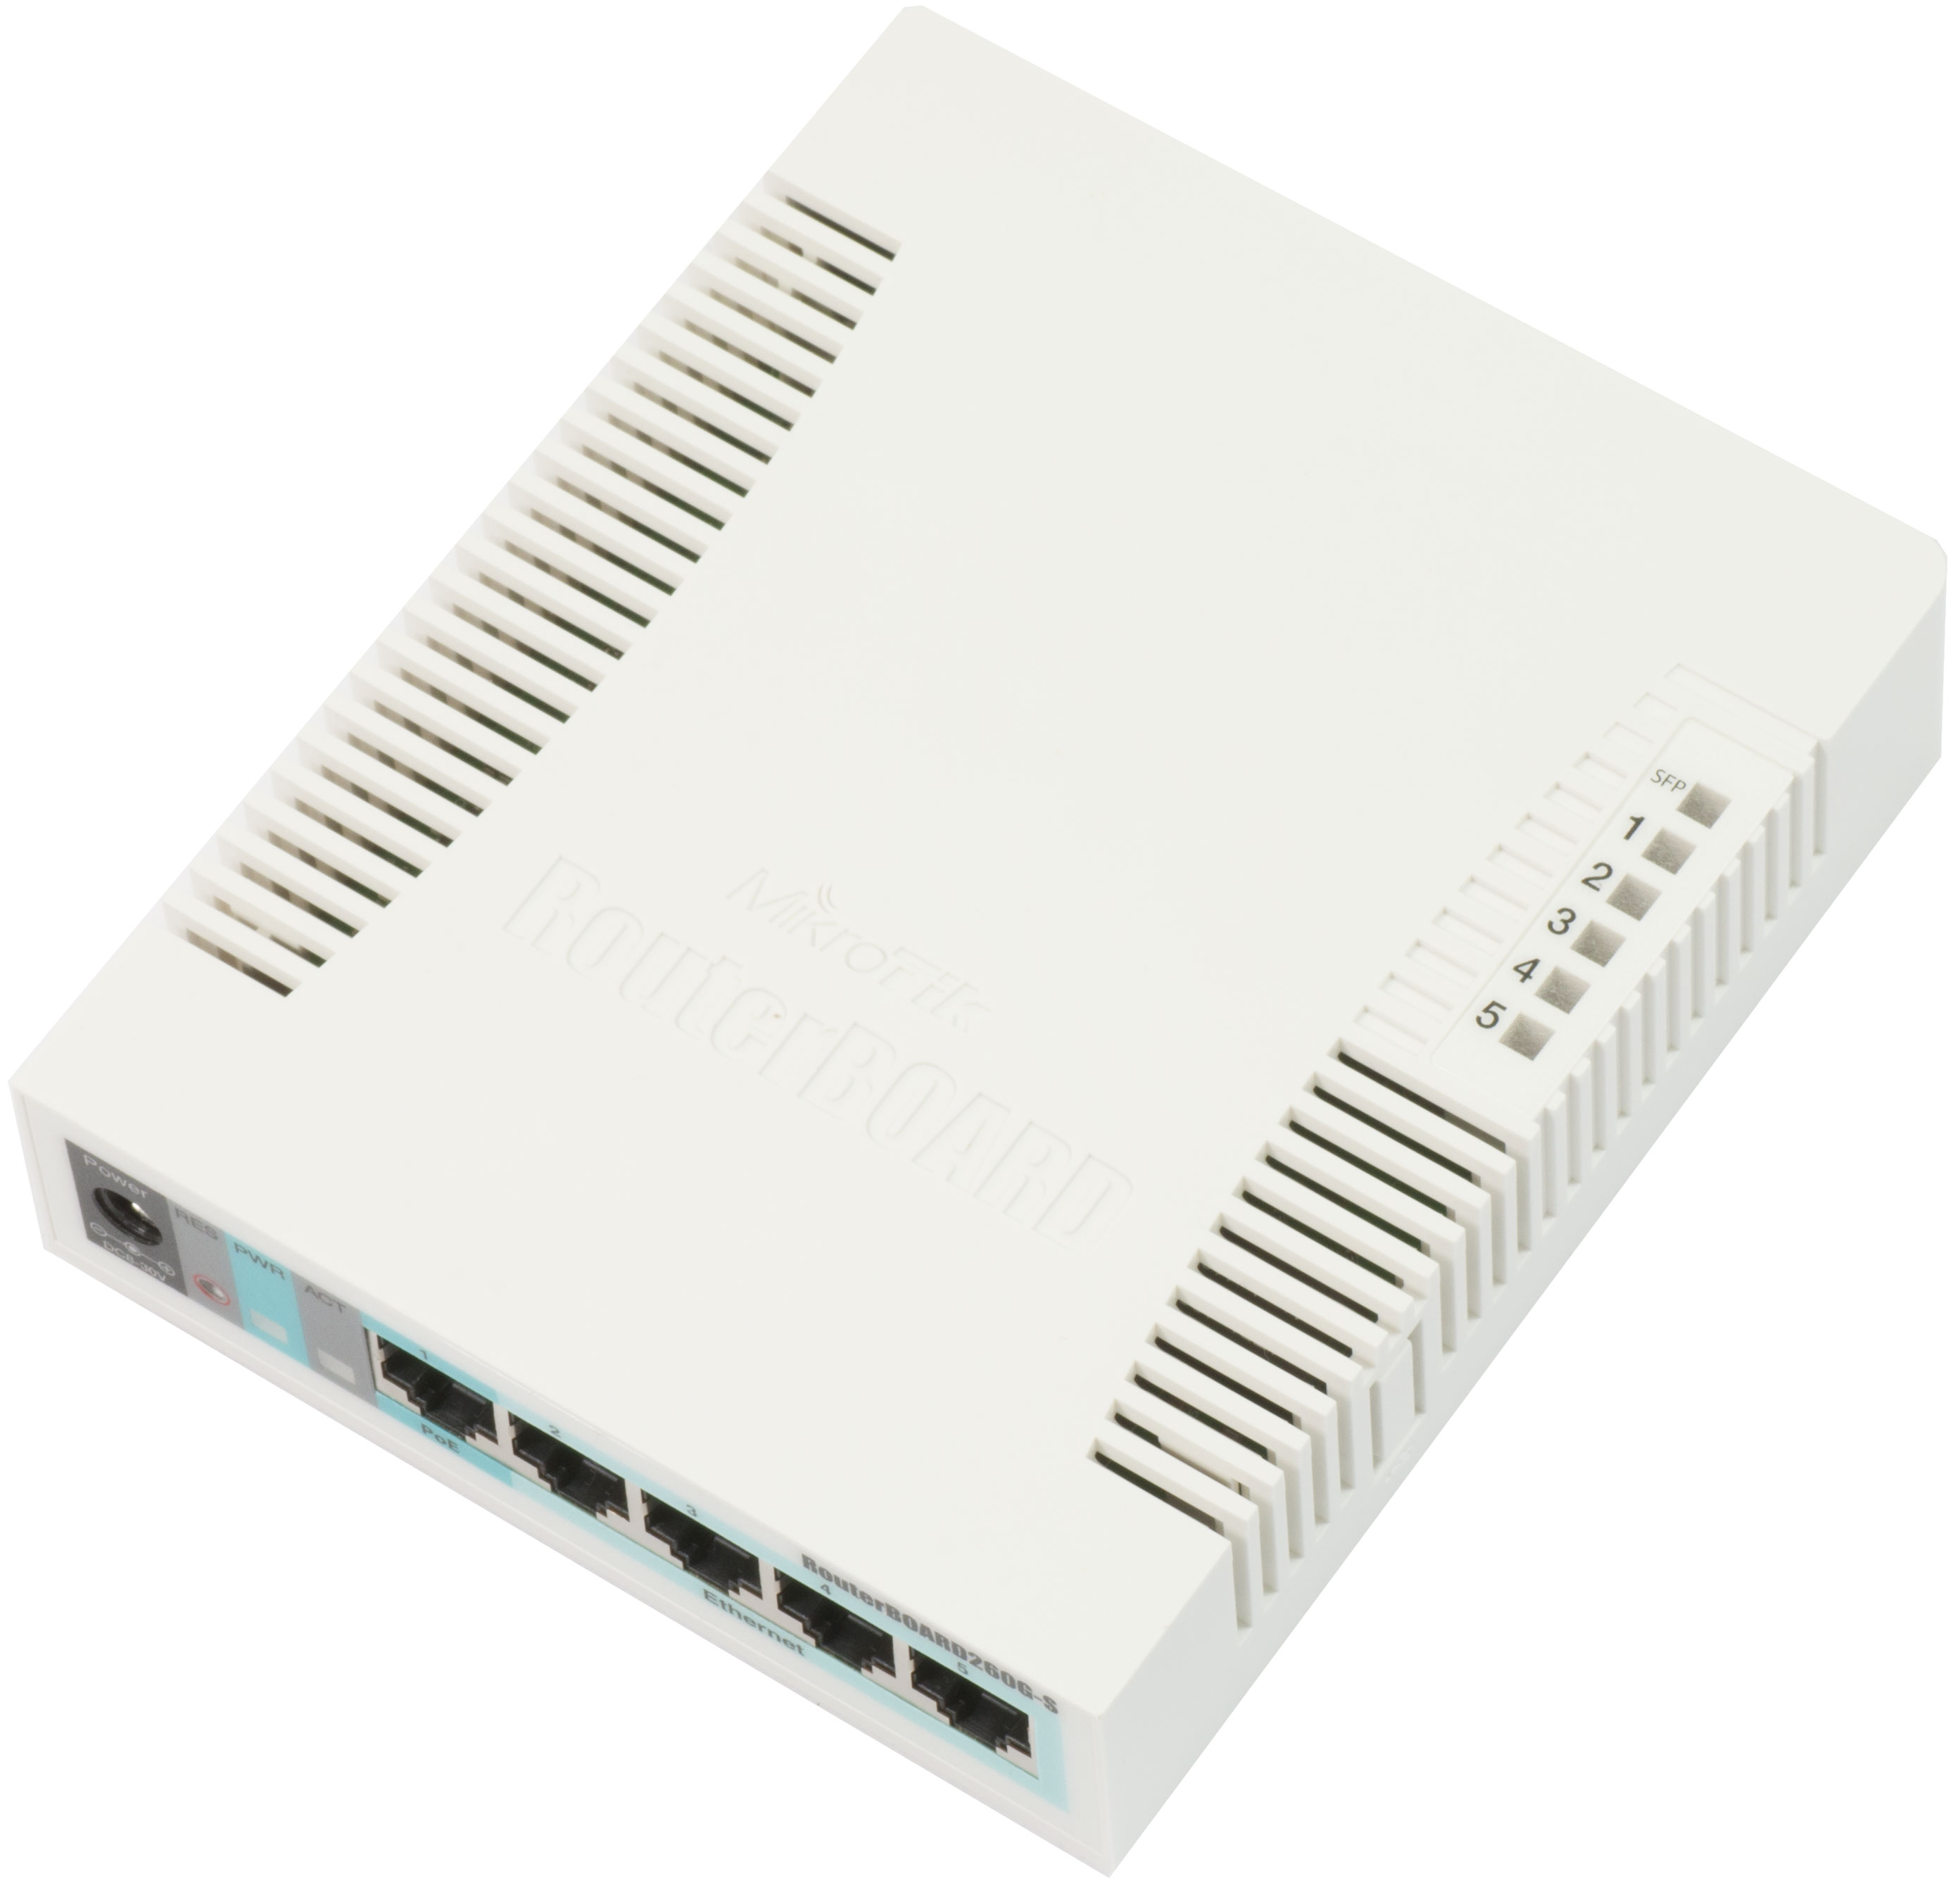 Jual RouterBOARD 260GS - Harga, Spesifikasi dan Review | Switches ...